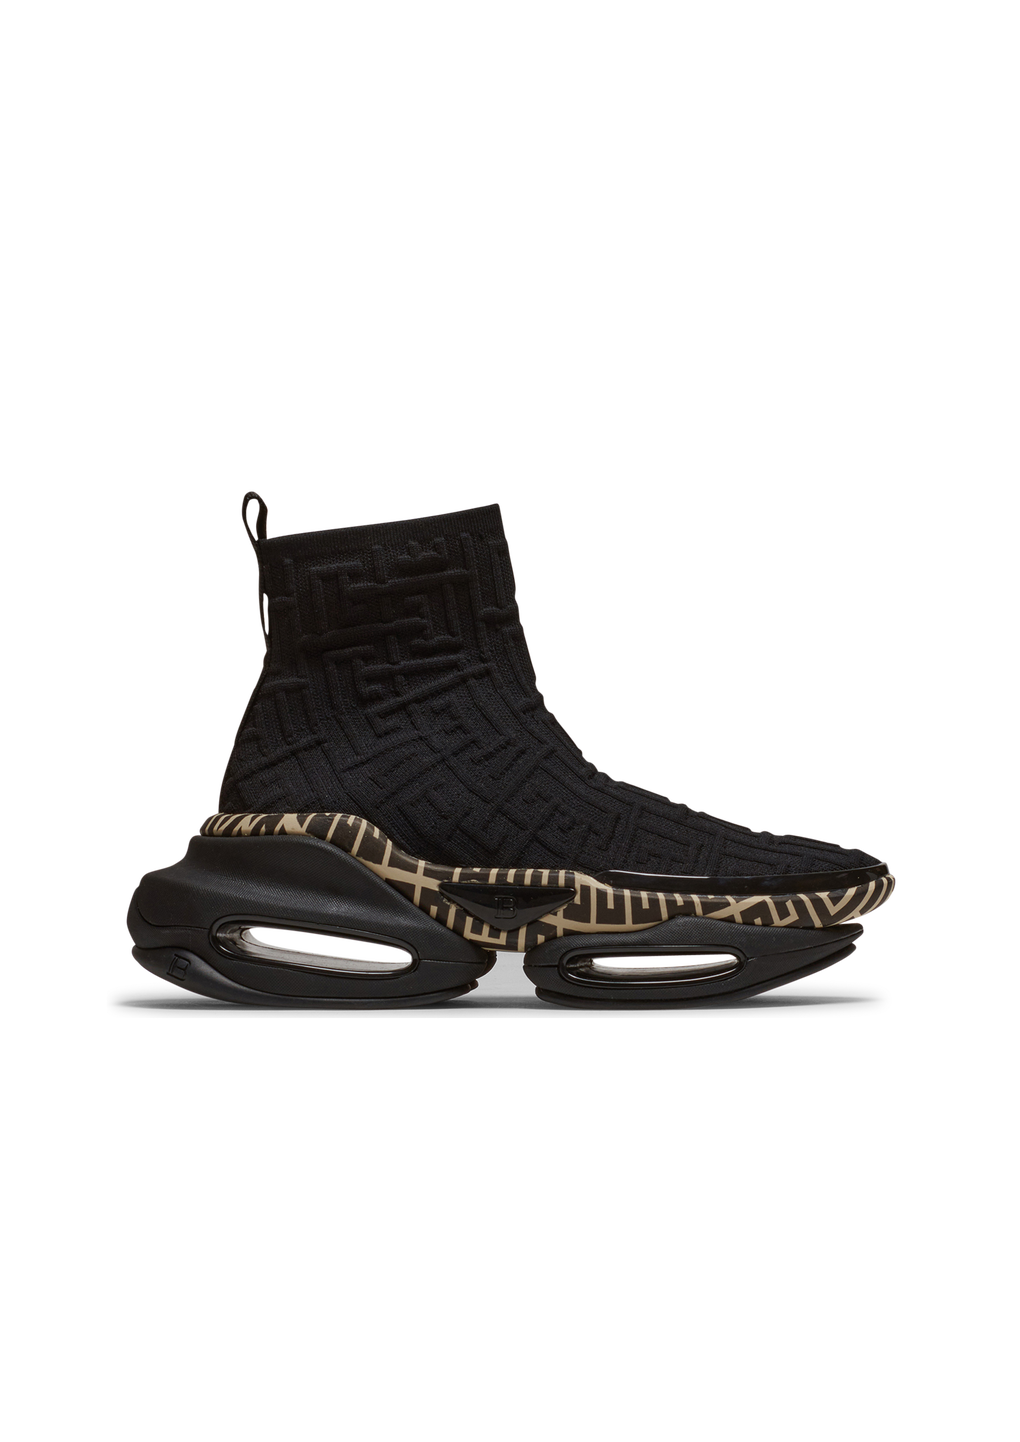 High-Top-Sneakers B-Bold aus Mesh mit Balmain-Monogramm, schwarz, hi-res